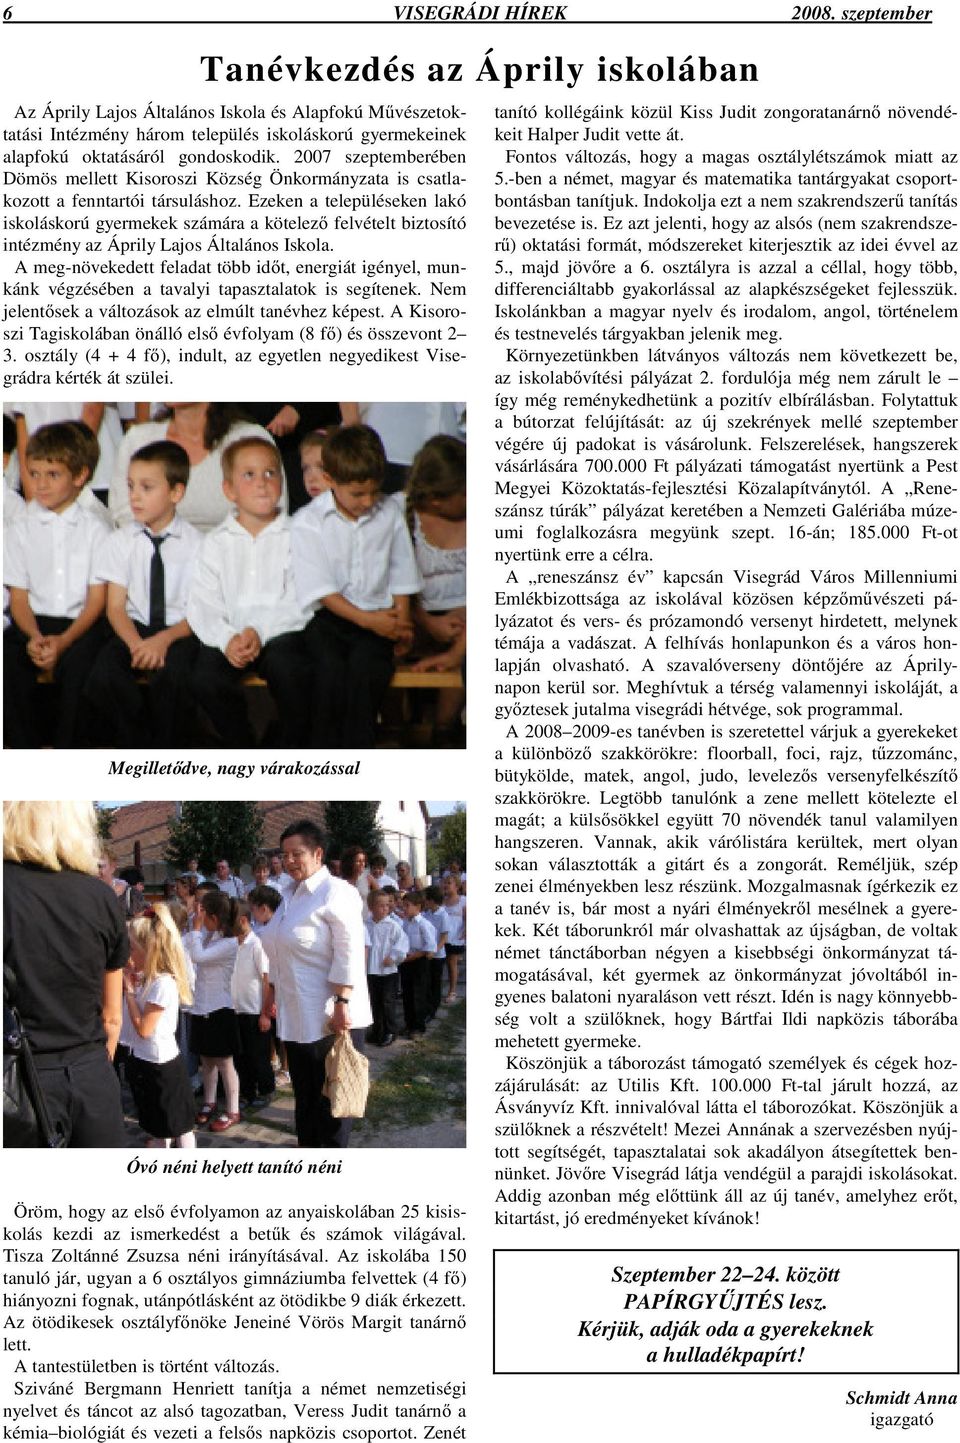 2007 szeptemberében Dömös mellett Kisoroszi Község Önkormányzata is csatlakozott a fenntartói társuláshoz.